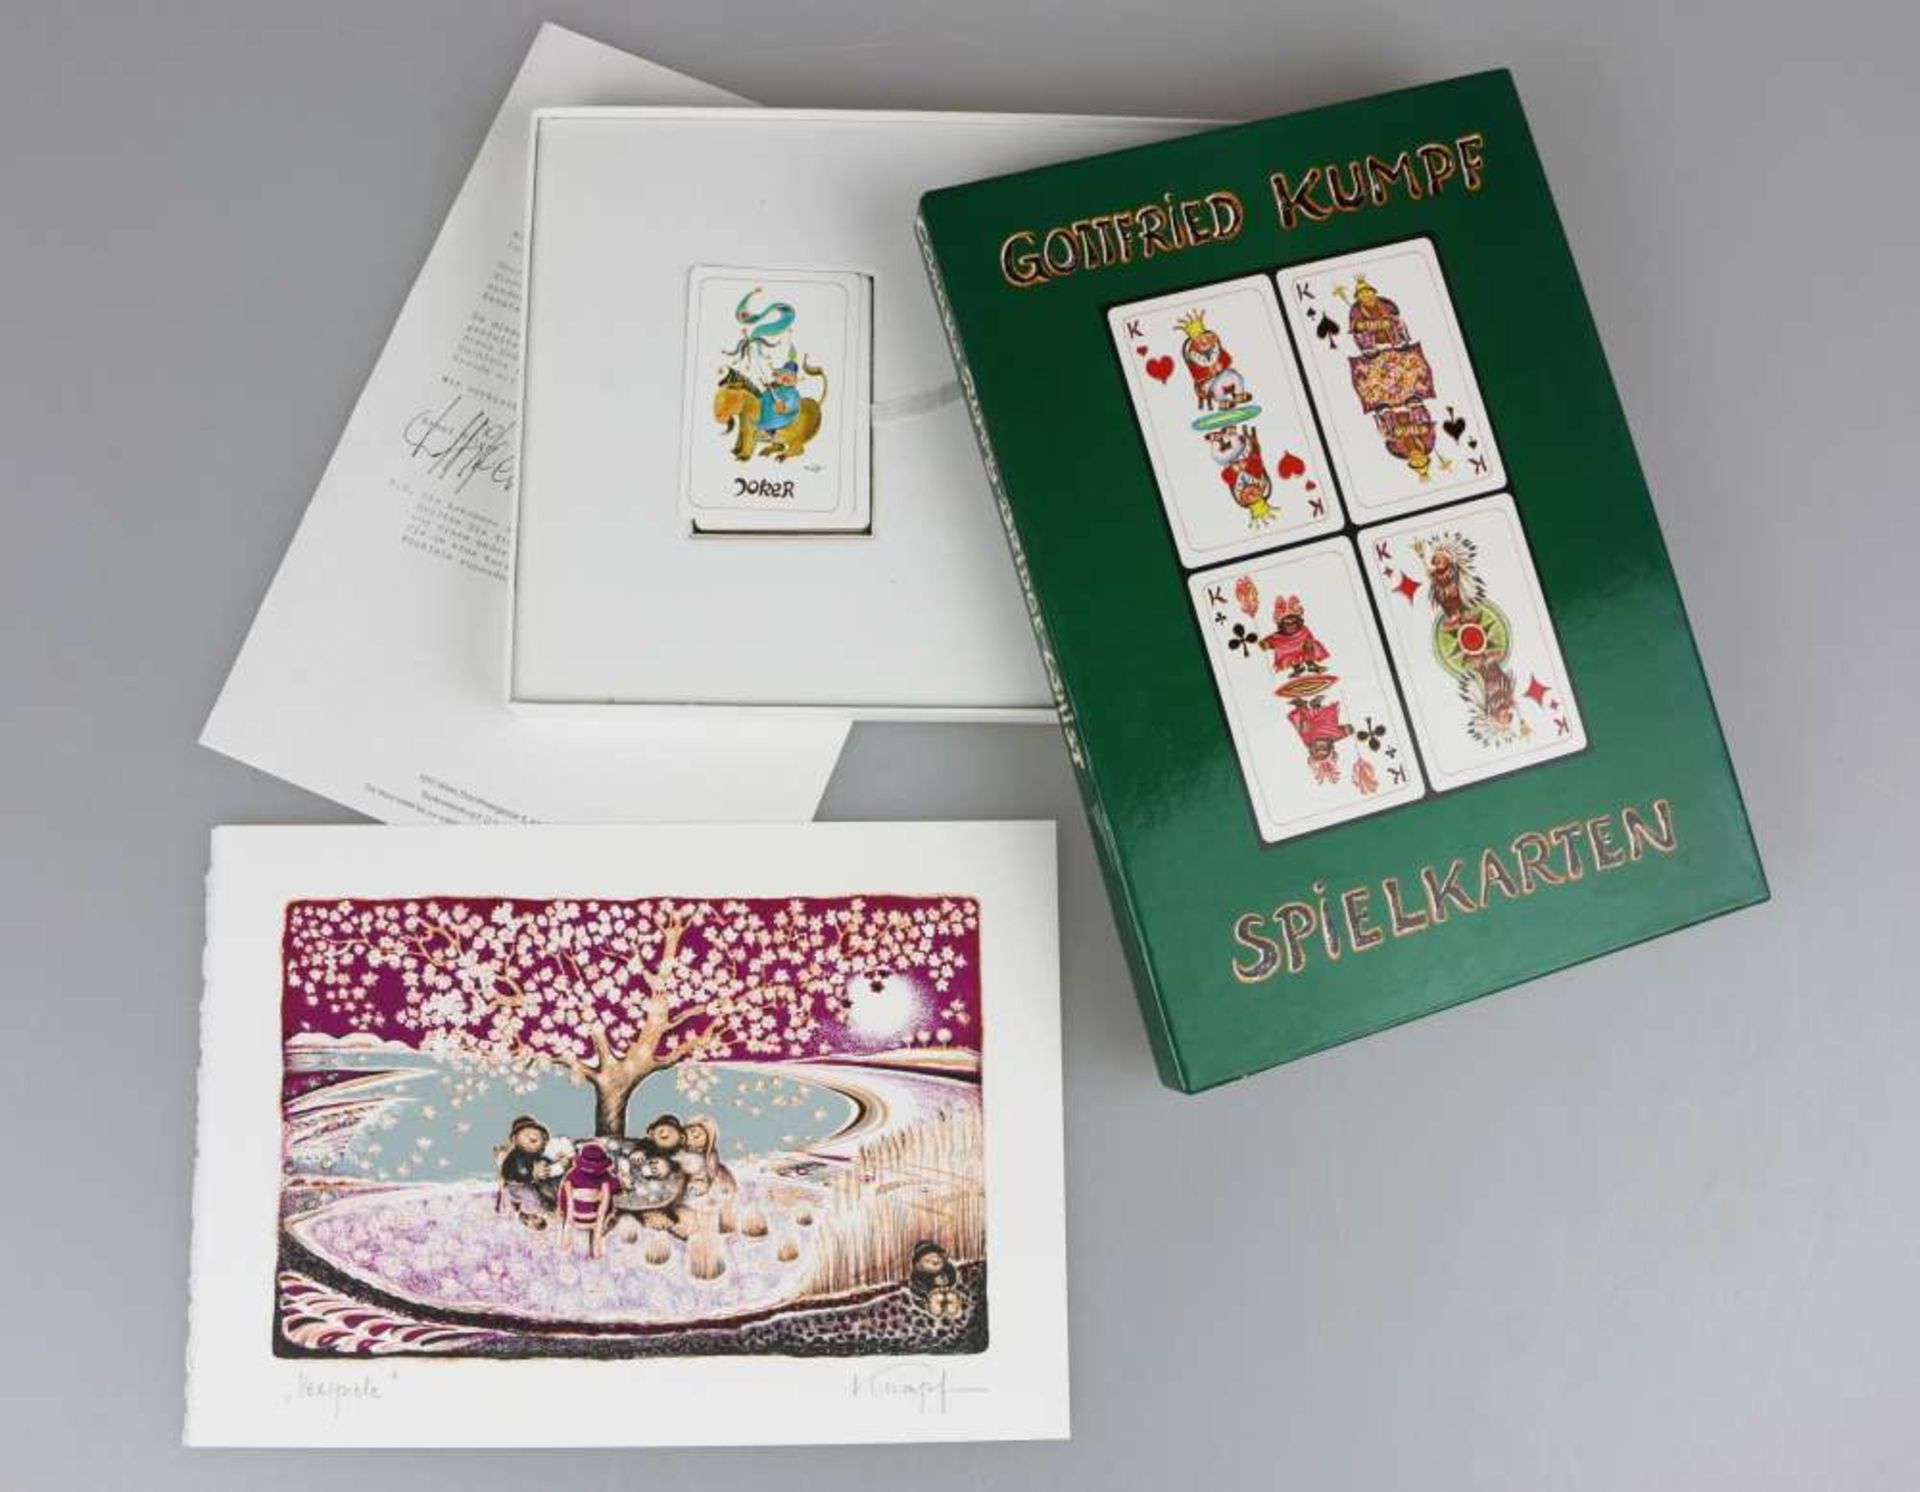 Gottfried KUMPF (1930), Spielkarten mit Farblithographie ''Seespiele'', 1984.